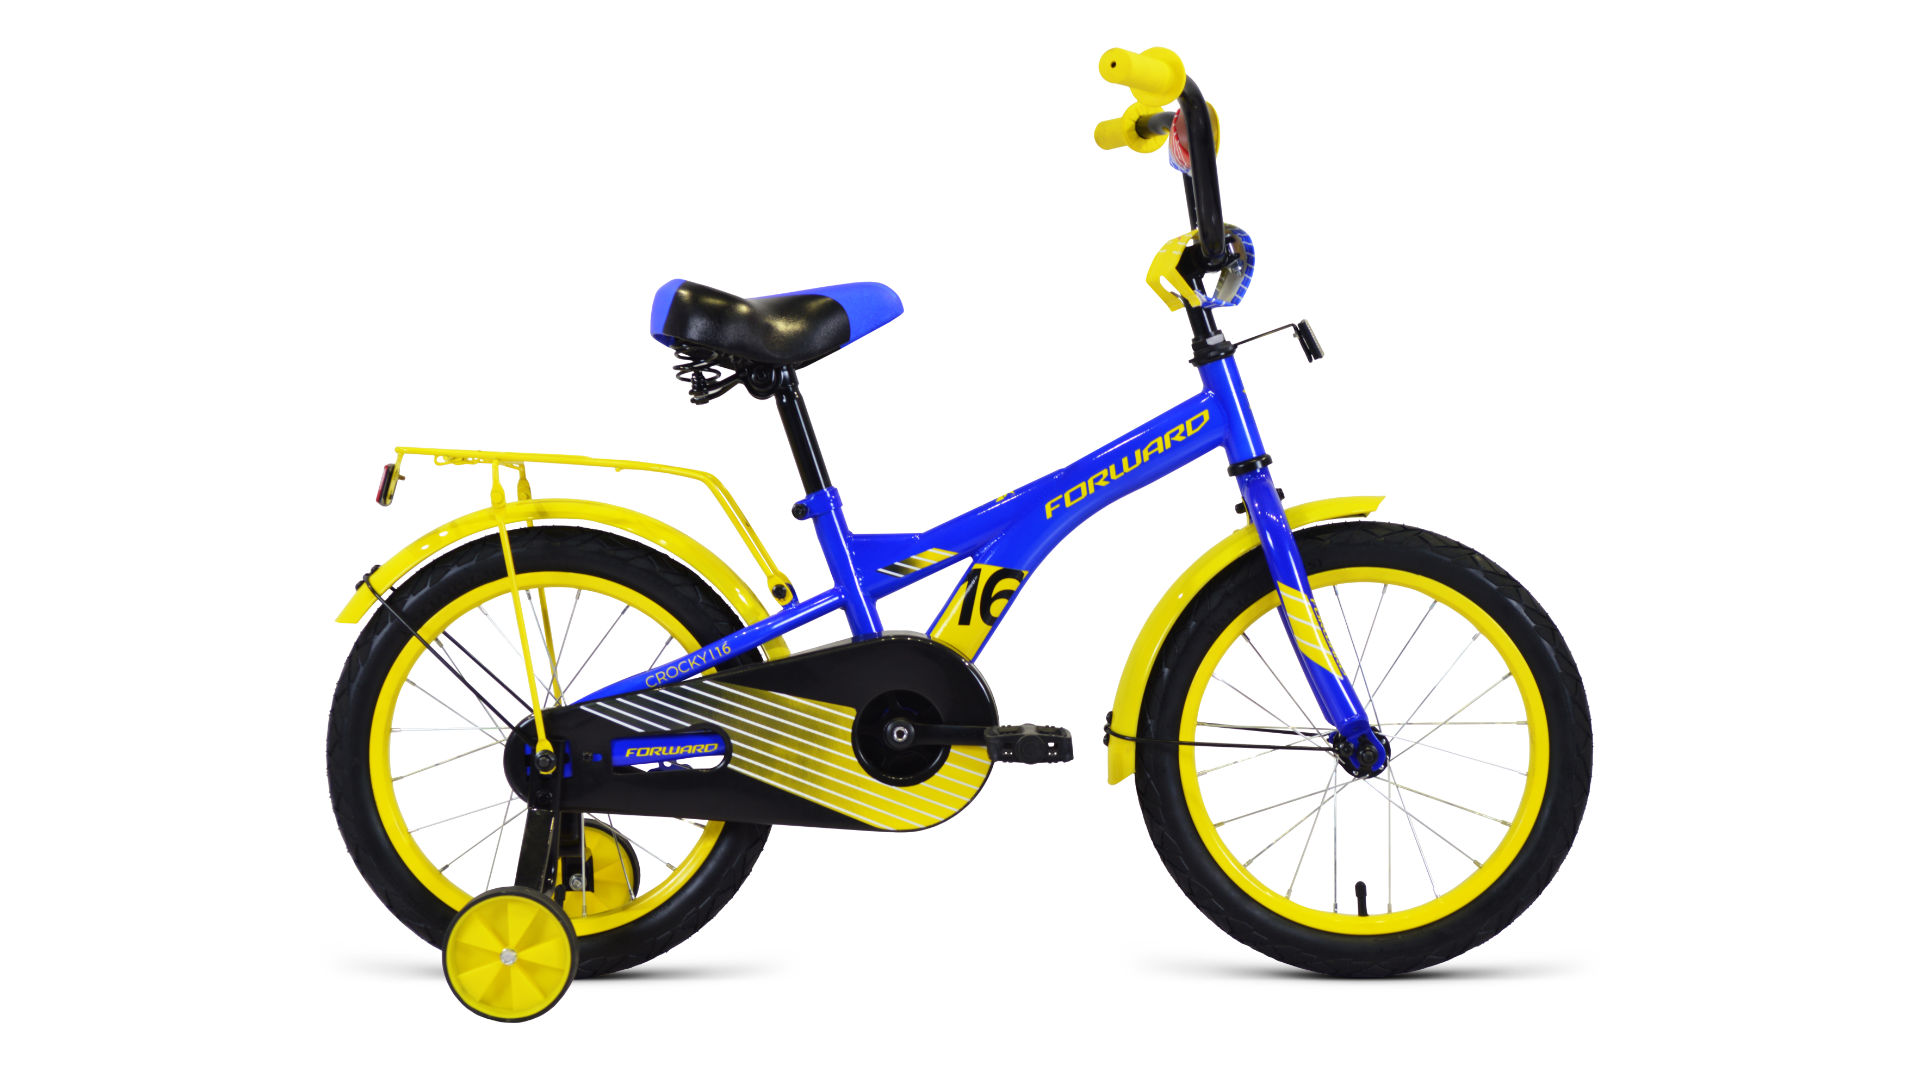 Детский велосипед Forward Crocky 16 (2020)